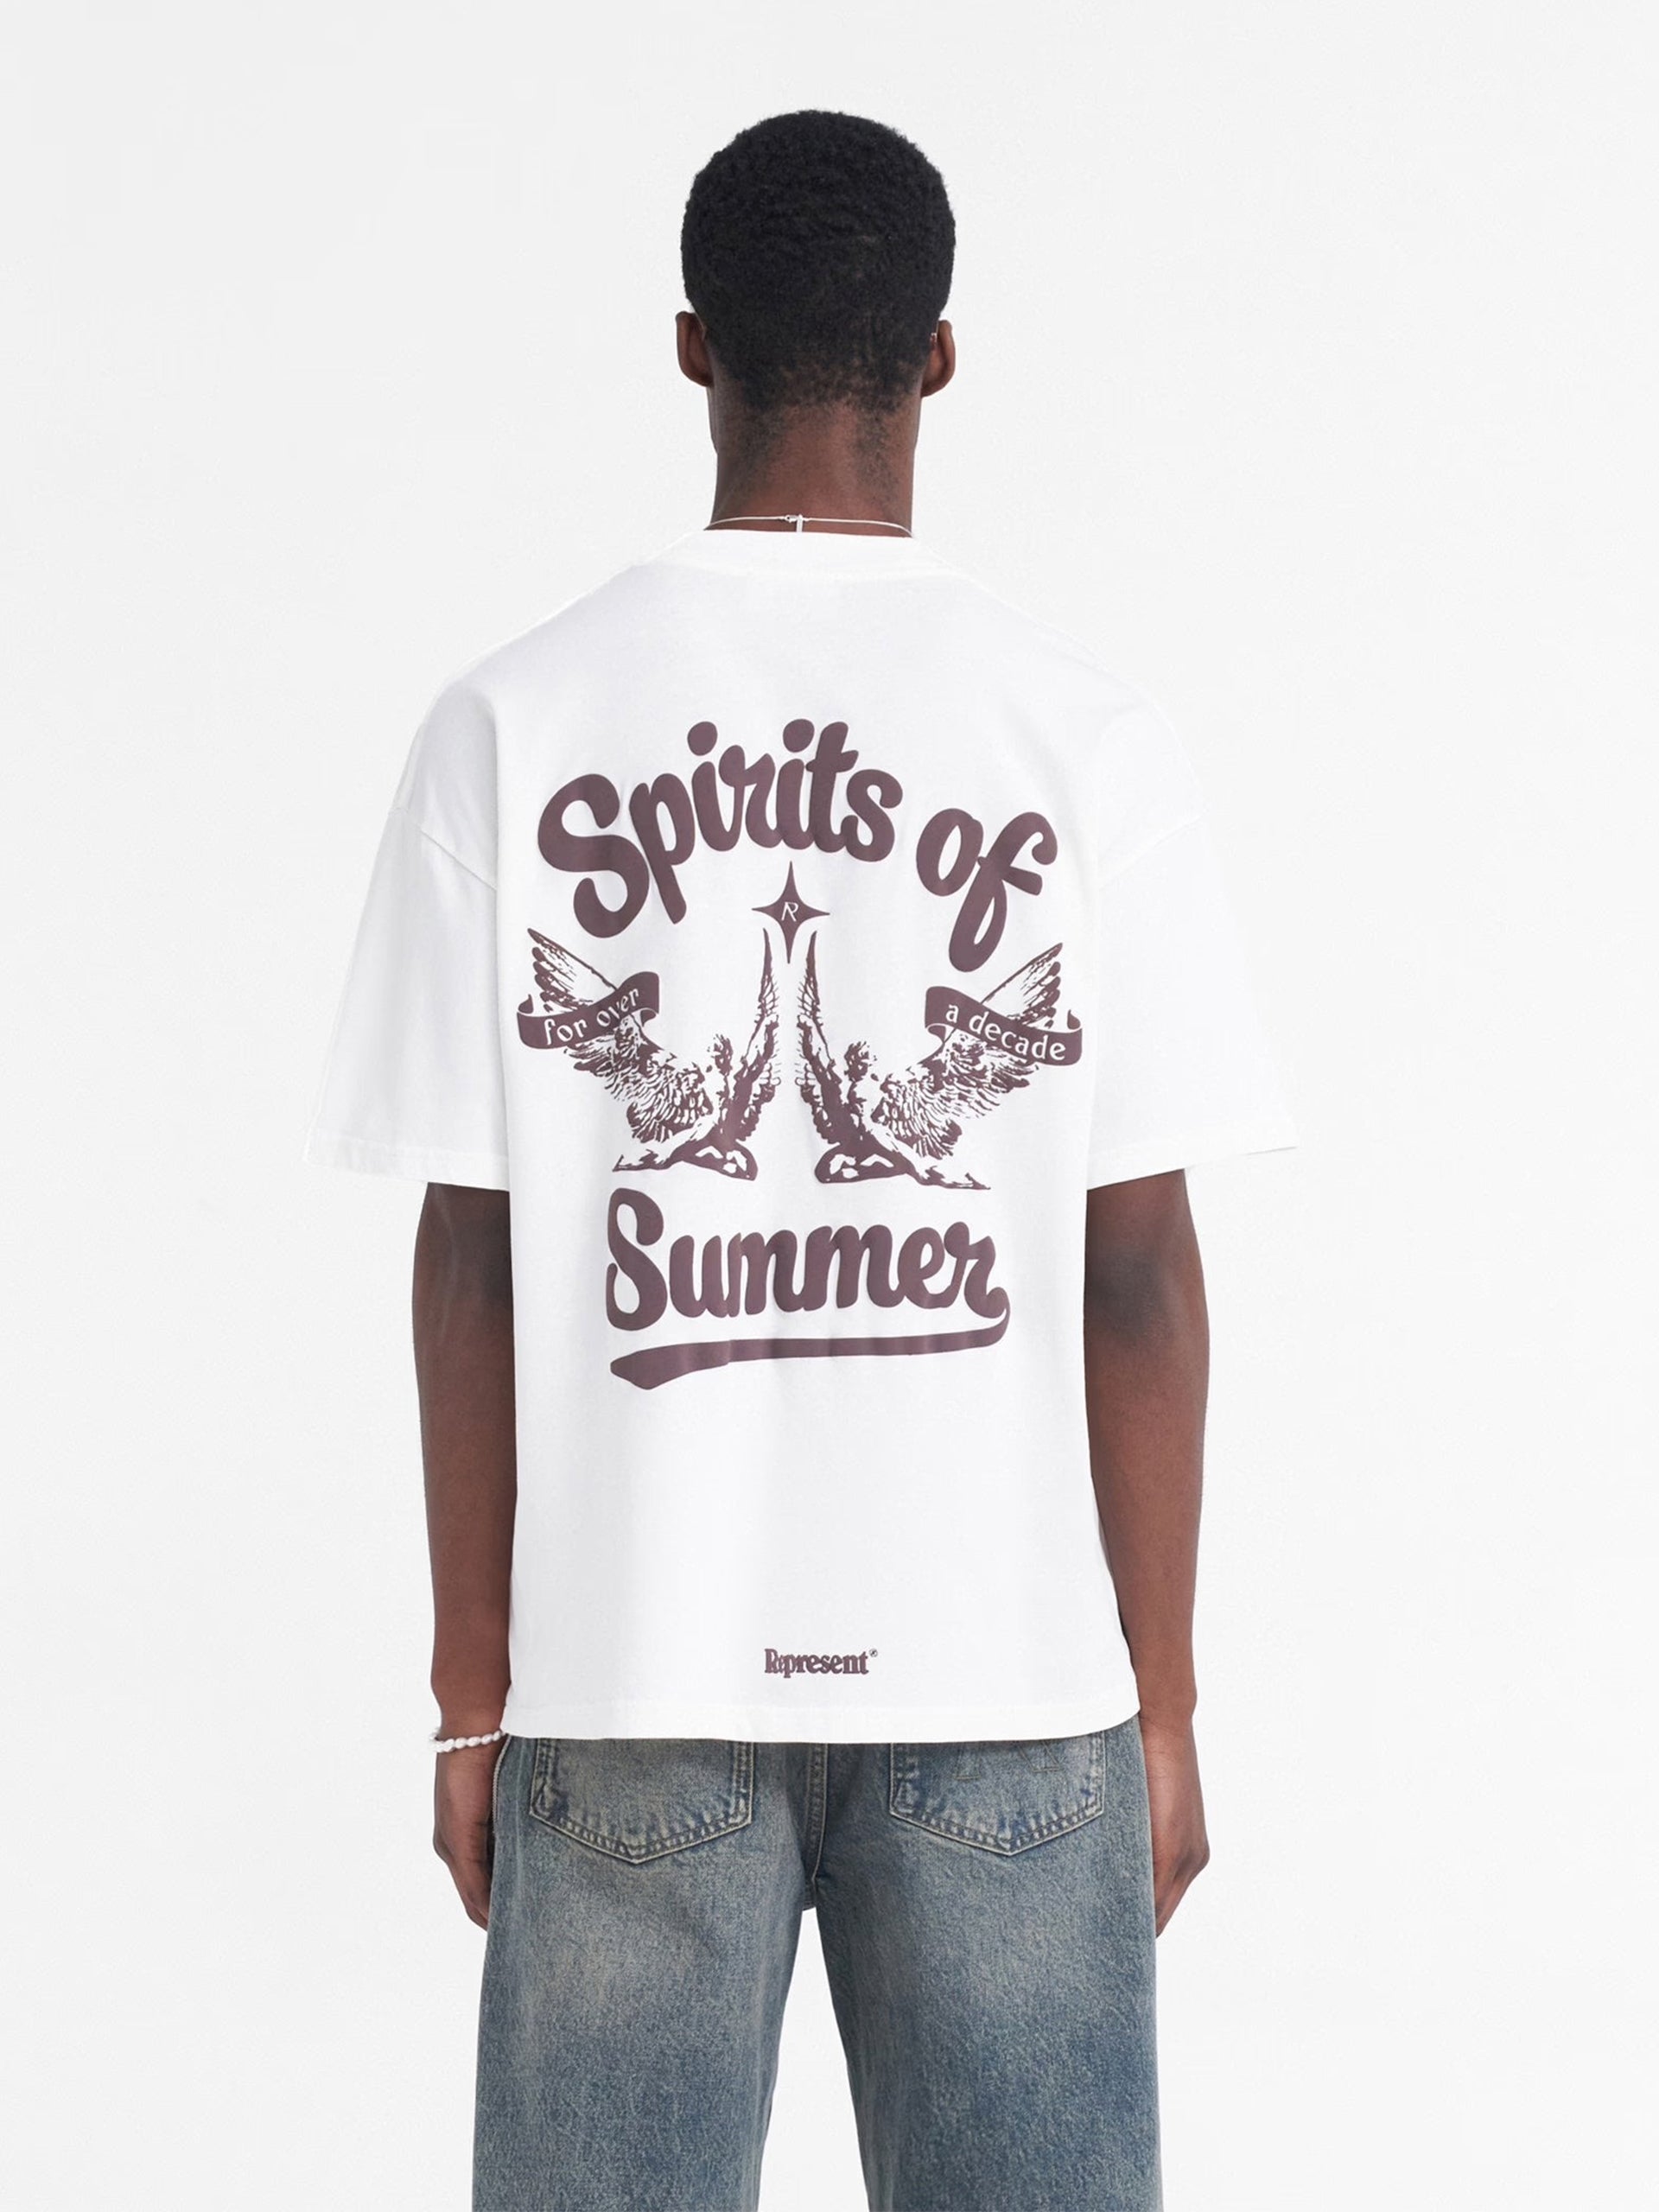 REPRESENT - Spirits of Summer T-Shirt